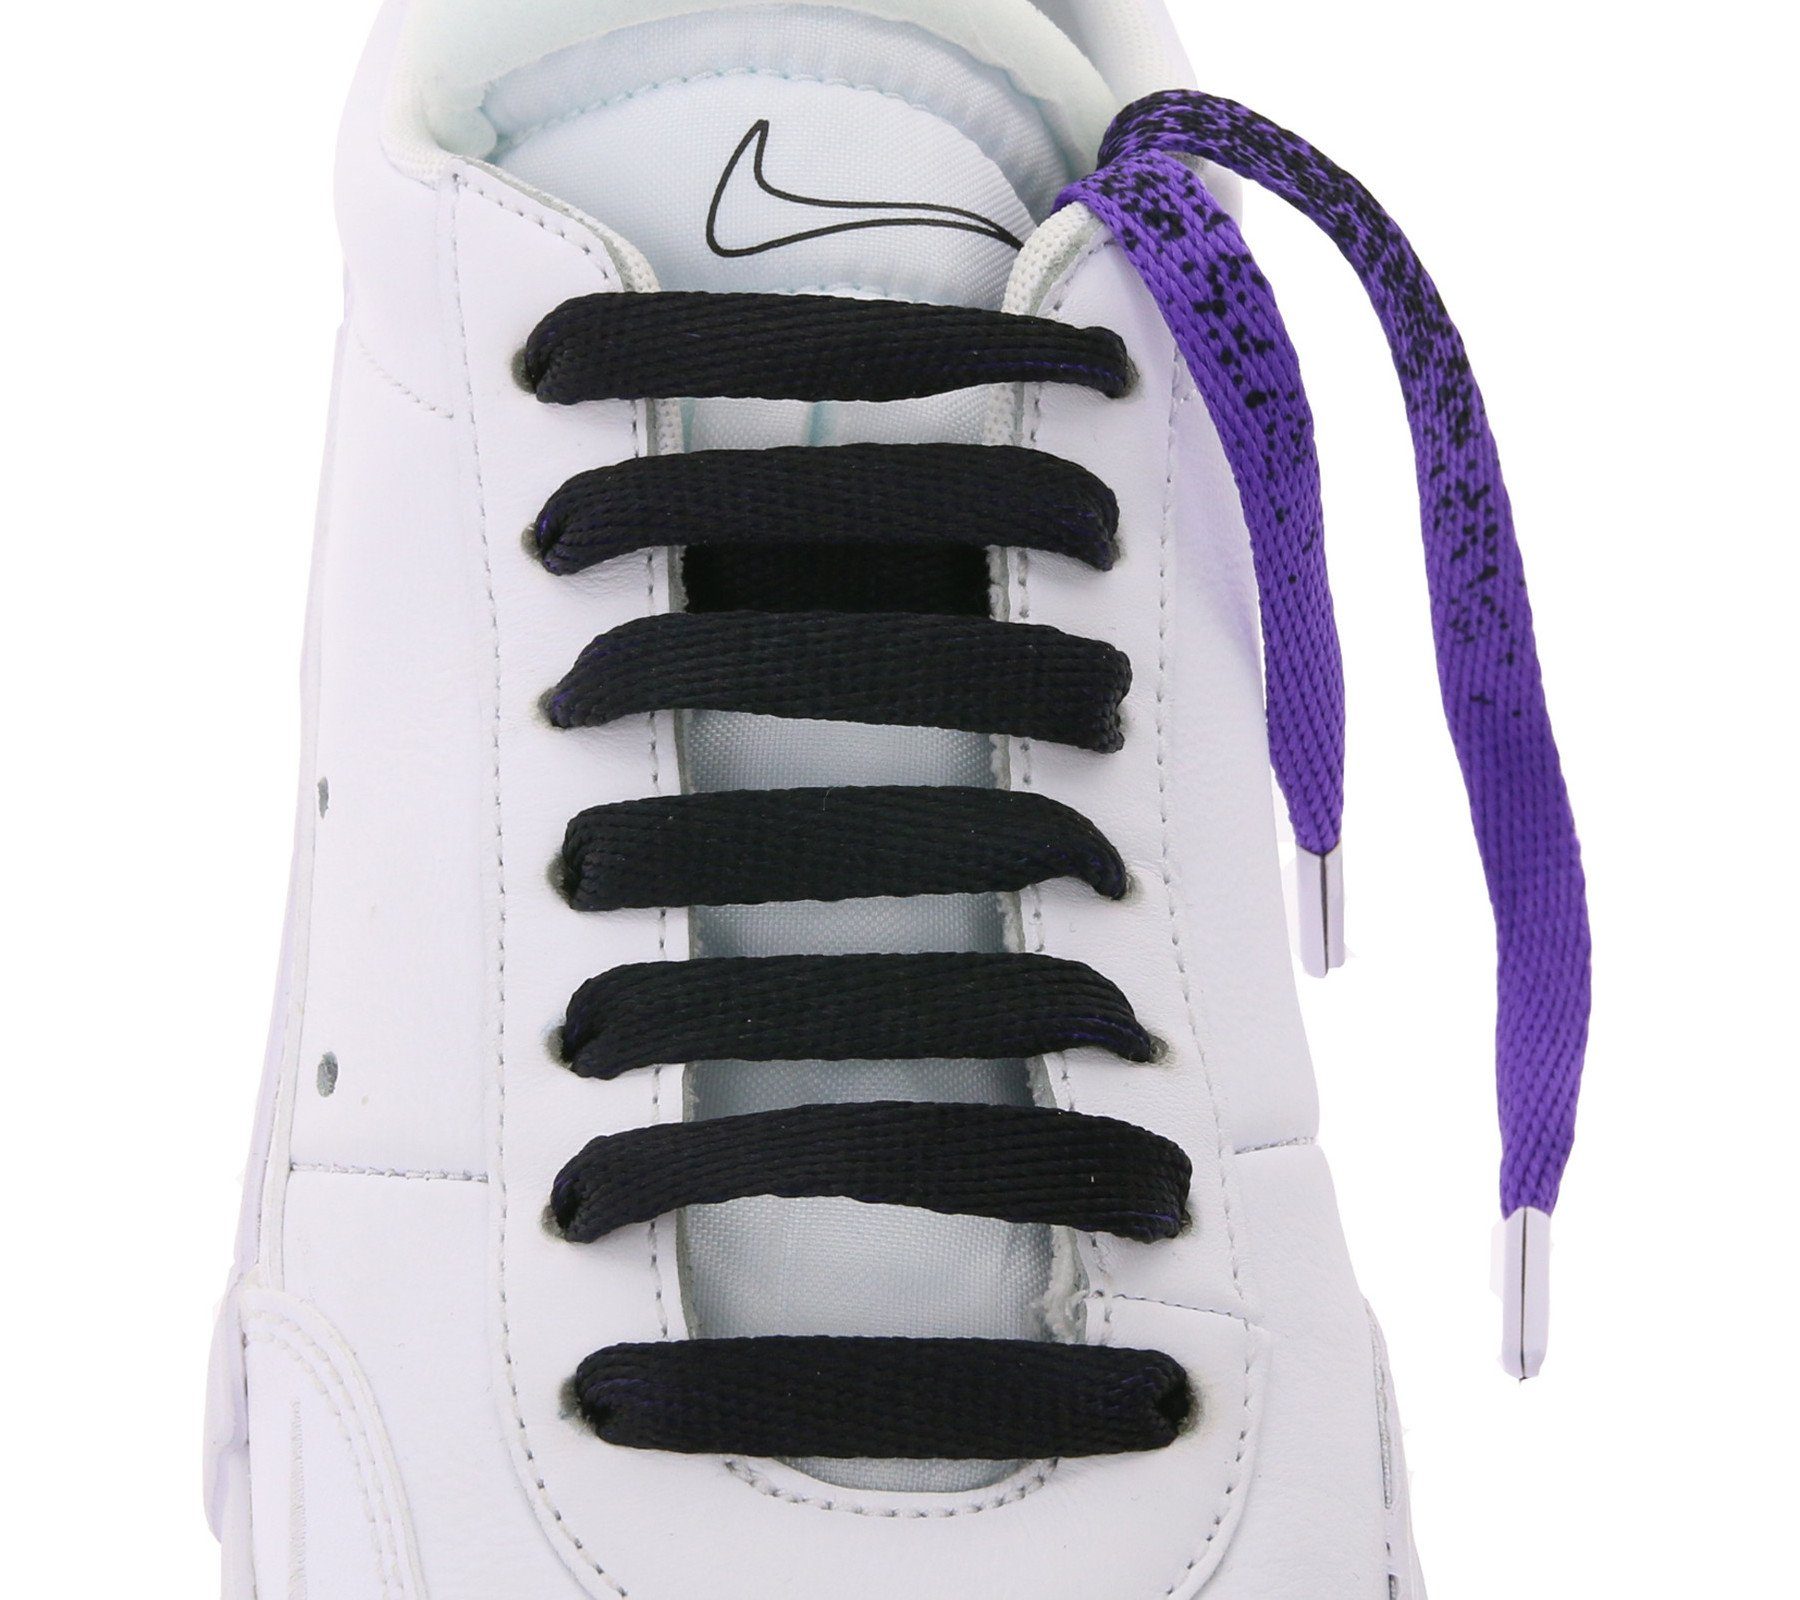 Schnürbänder TubeLaces Tubelaces Schuhbänder Schuhe Schnürsenkel trendige Violett/Schwarz Schnürsenkel